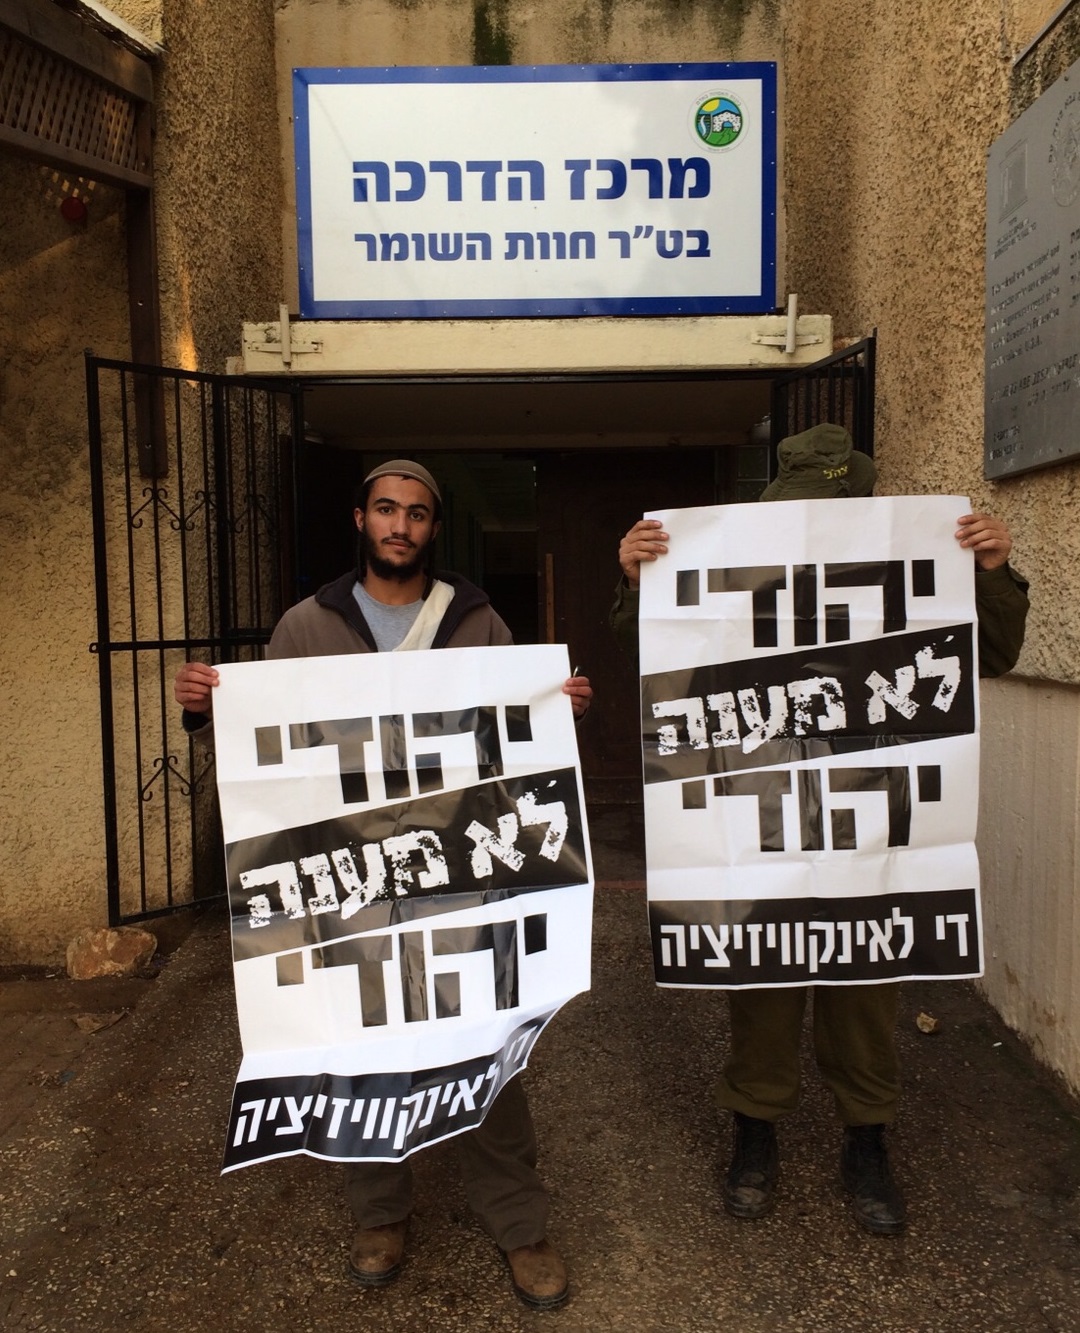 שריה כלף עם חייל נוסף נושאים שלטים 'יהודי לא מענה יהודי' בבסיס חוות השומר